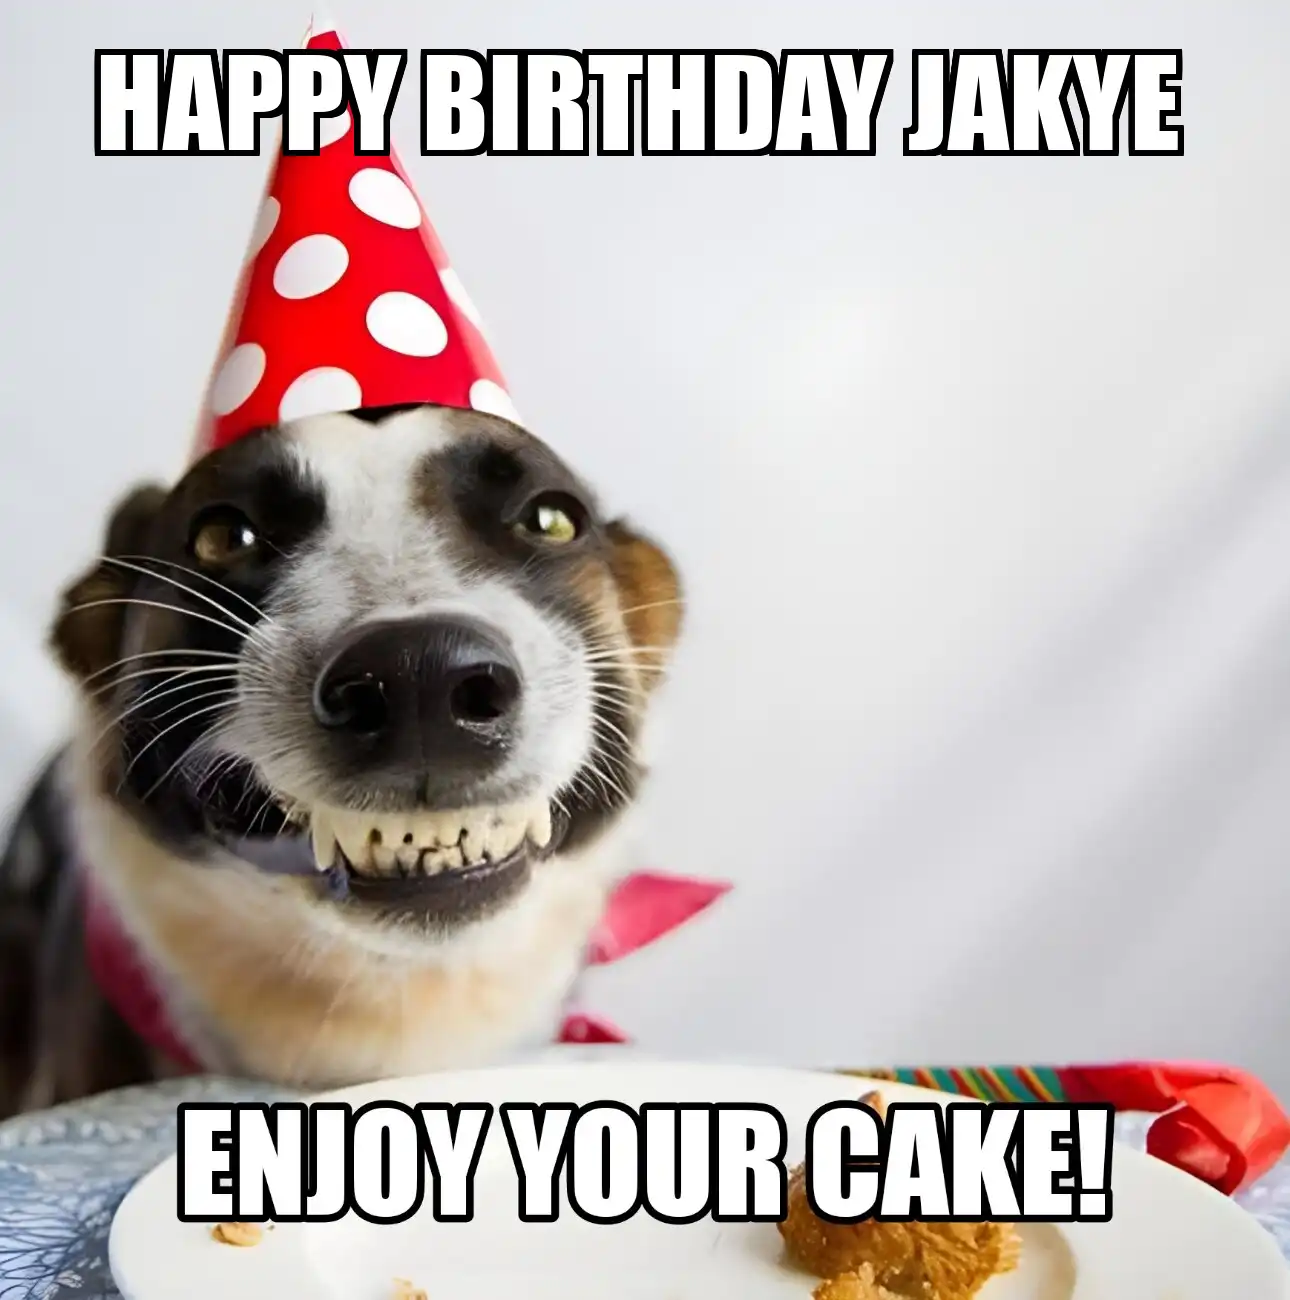 Happy Birthday Jakye Enjoy Your Cake Dog Meme